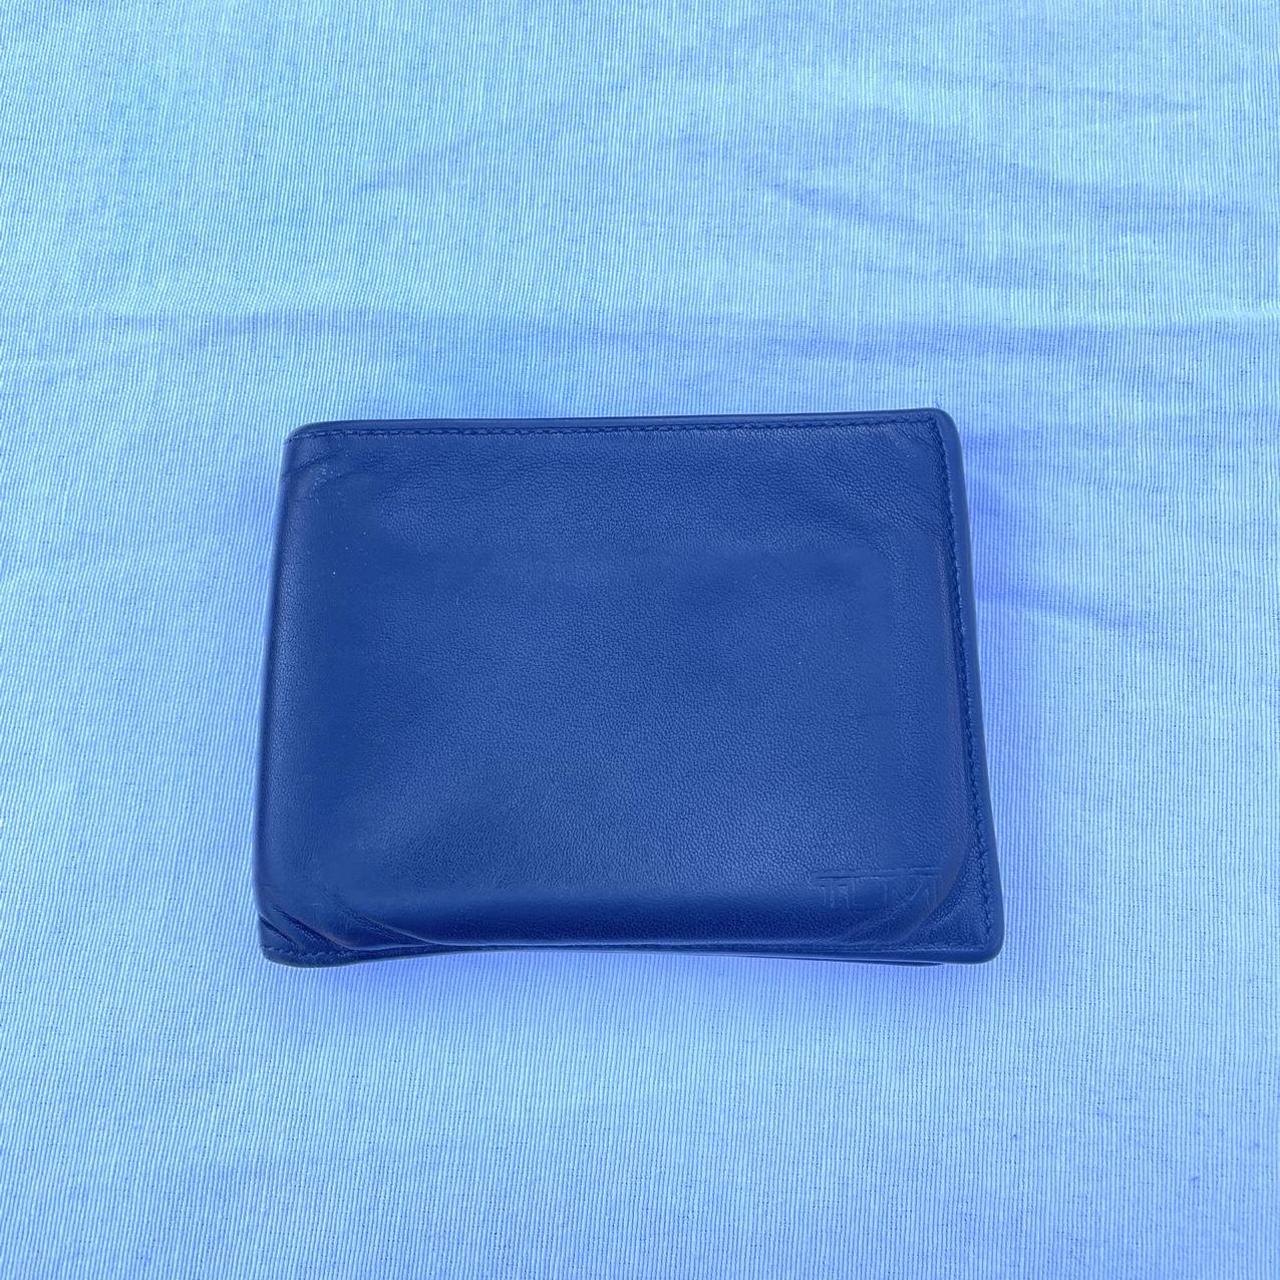 Tumi Men's Black Wallet-purses